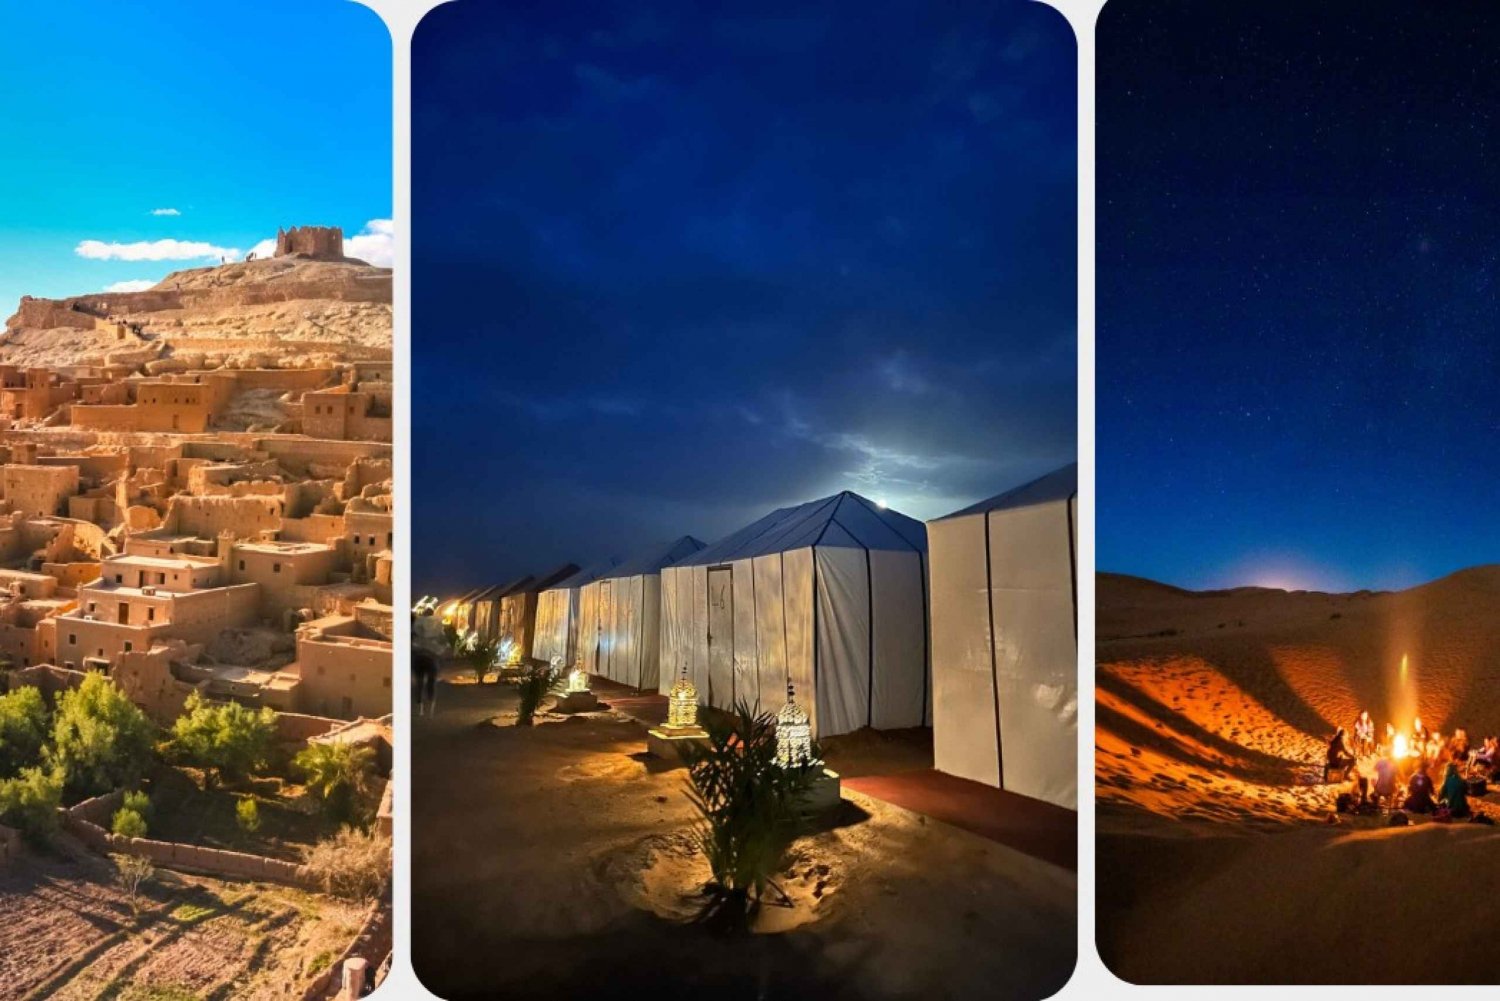 Fez to Marrakech: Desert Adventure in 3 Days